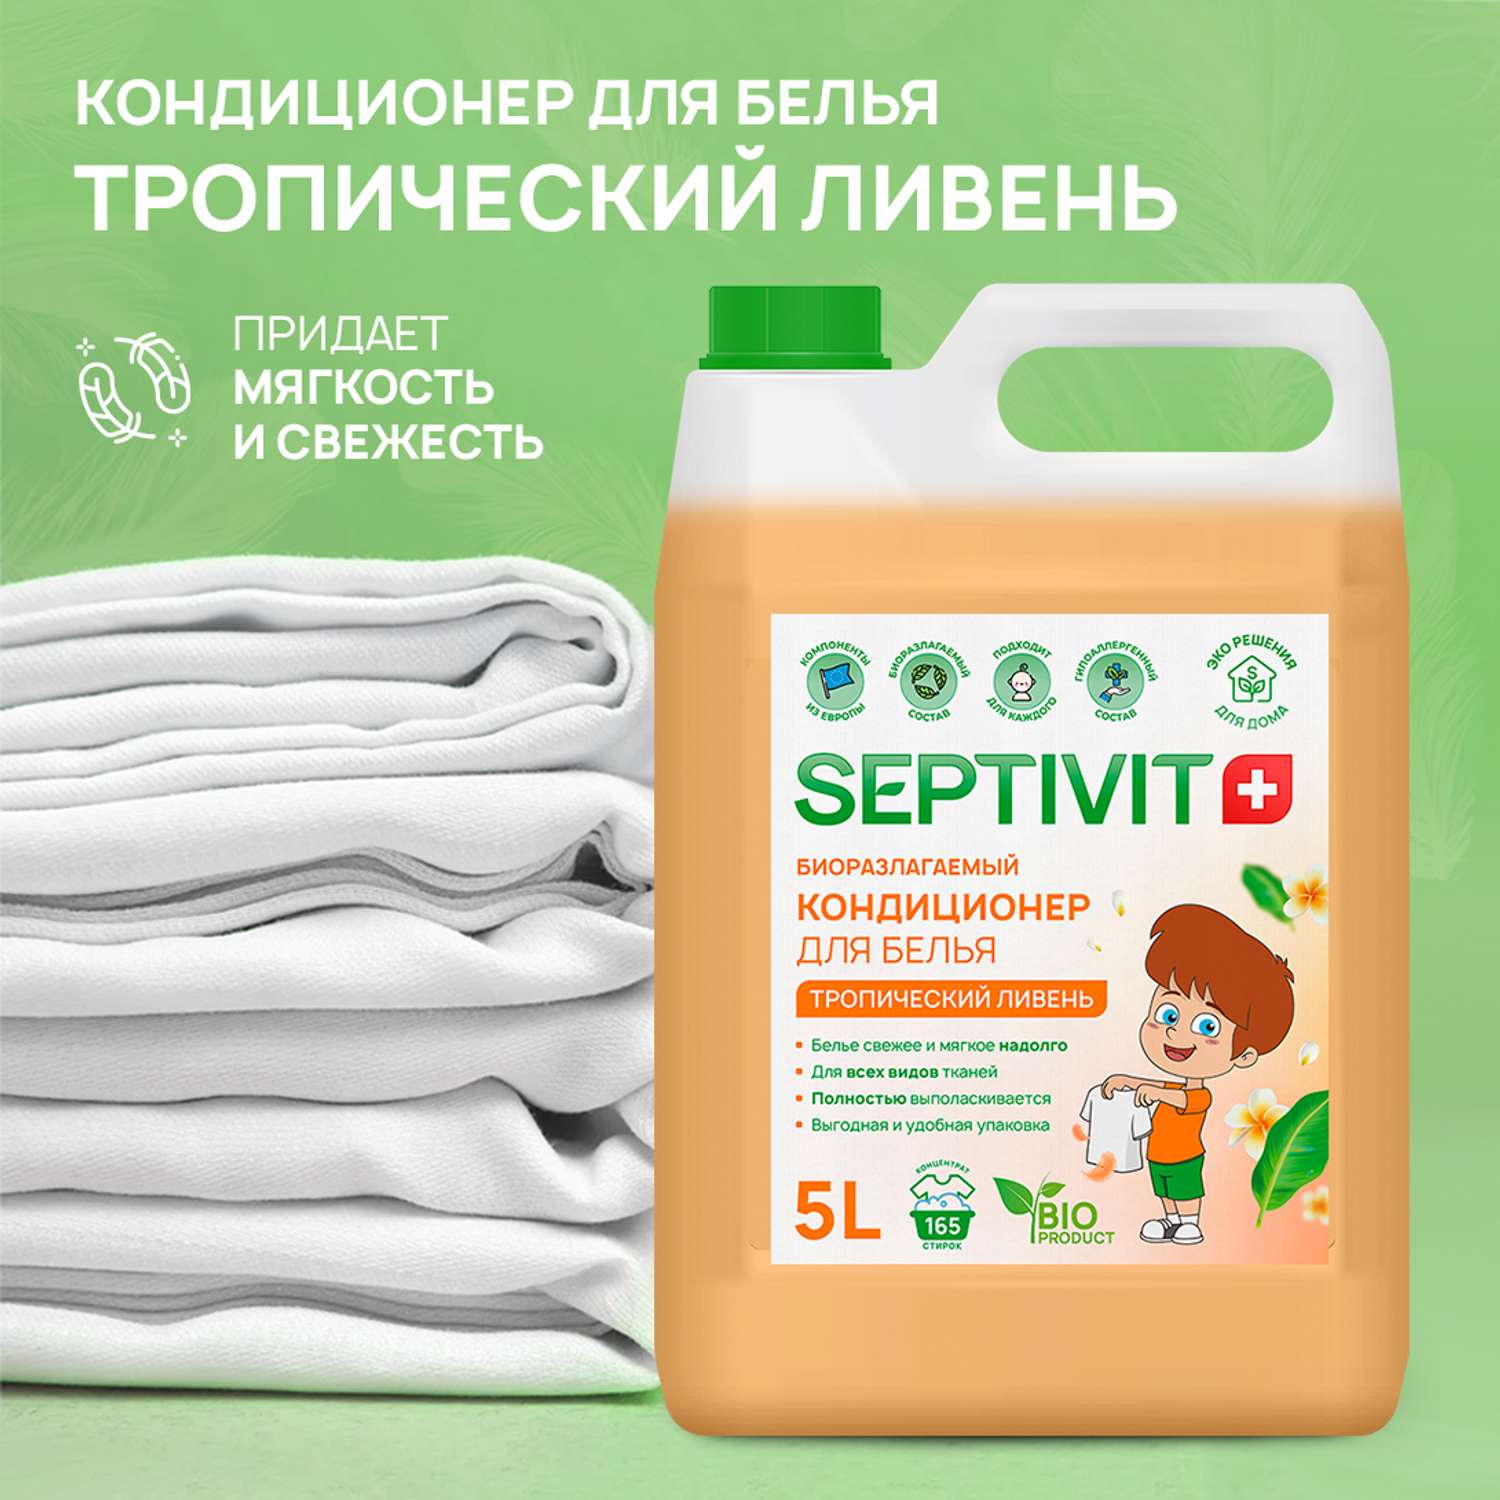 Кондиционер для белья SEPTIVIT Premium 5л с ароматом Тропический ливень - фото 2